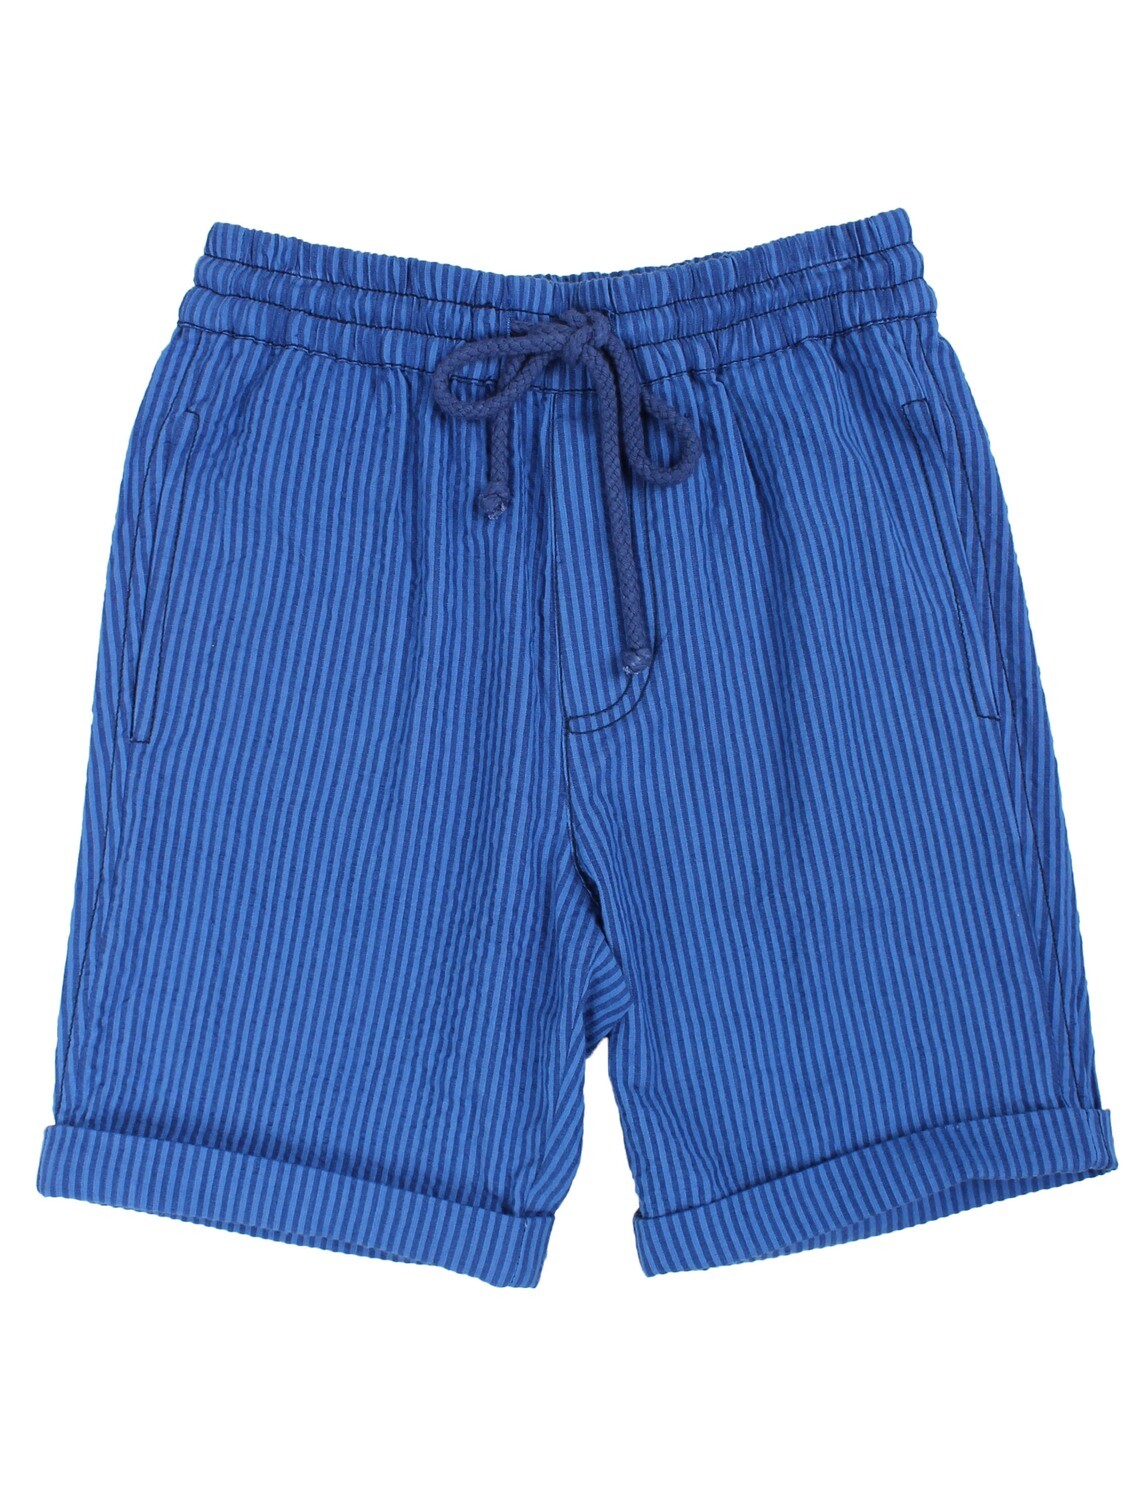 Danefae Seersucker Shorts - luftige Shorts (blau)